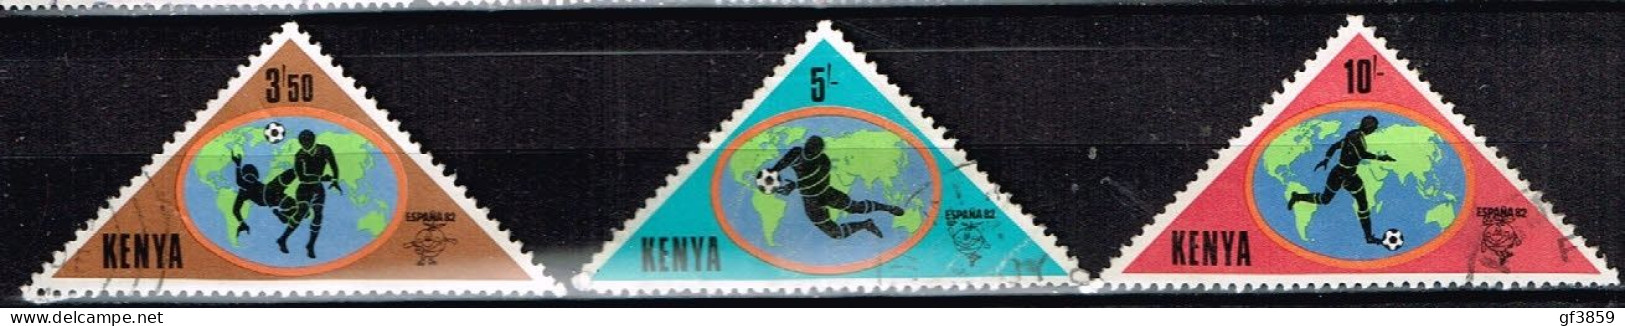 KENYA / Oblitérés/Used / 1982 - Coupe Du Monde De Football Espana 82 - Kenya (1963-...)